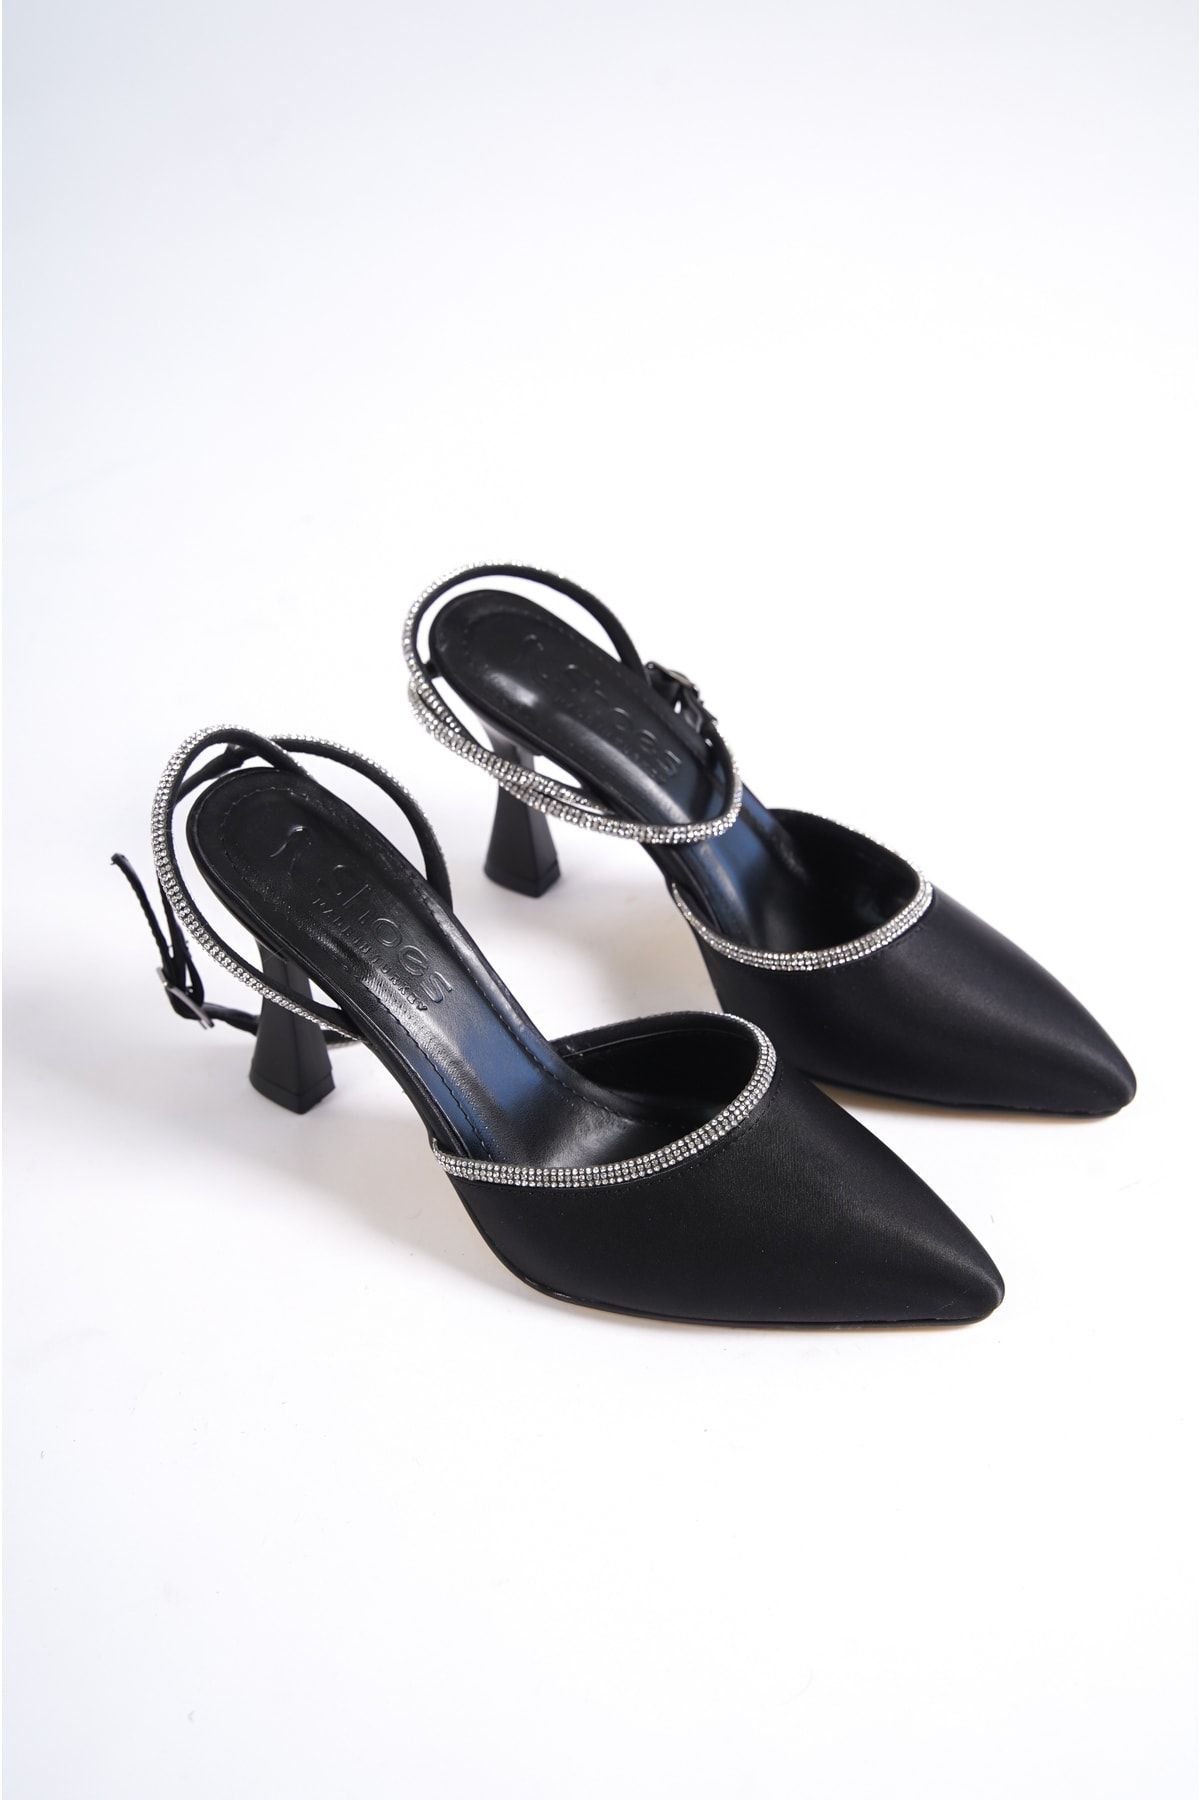 BAKGİY Siyah Saten Kadın Taşlı Topuklu Ayakkabı Bg1149-119-0002